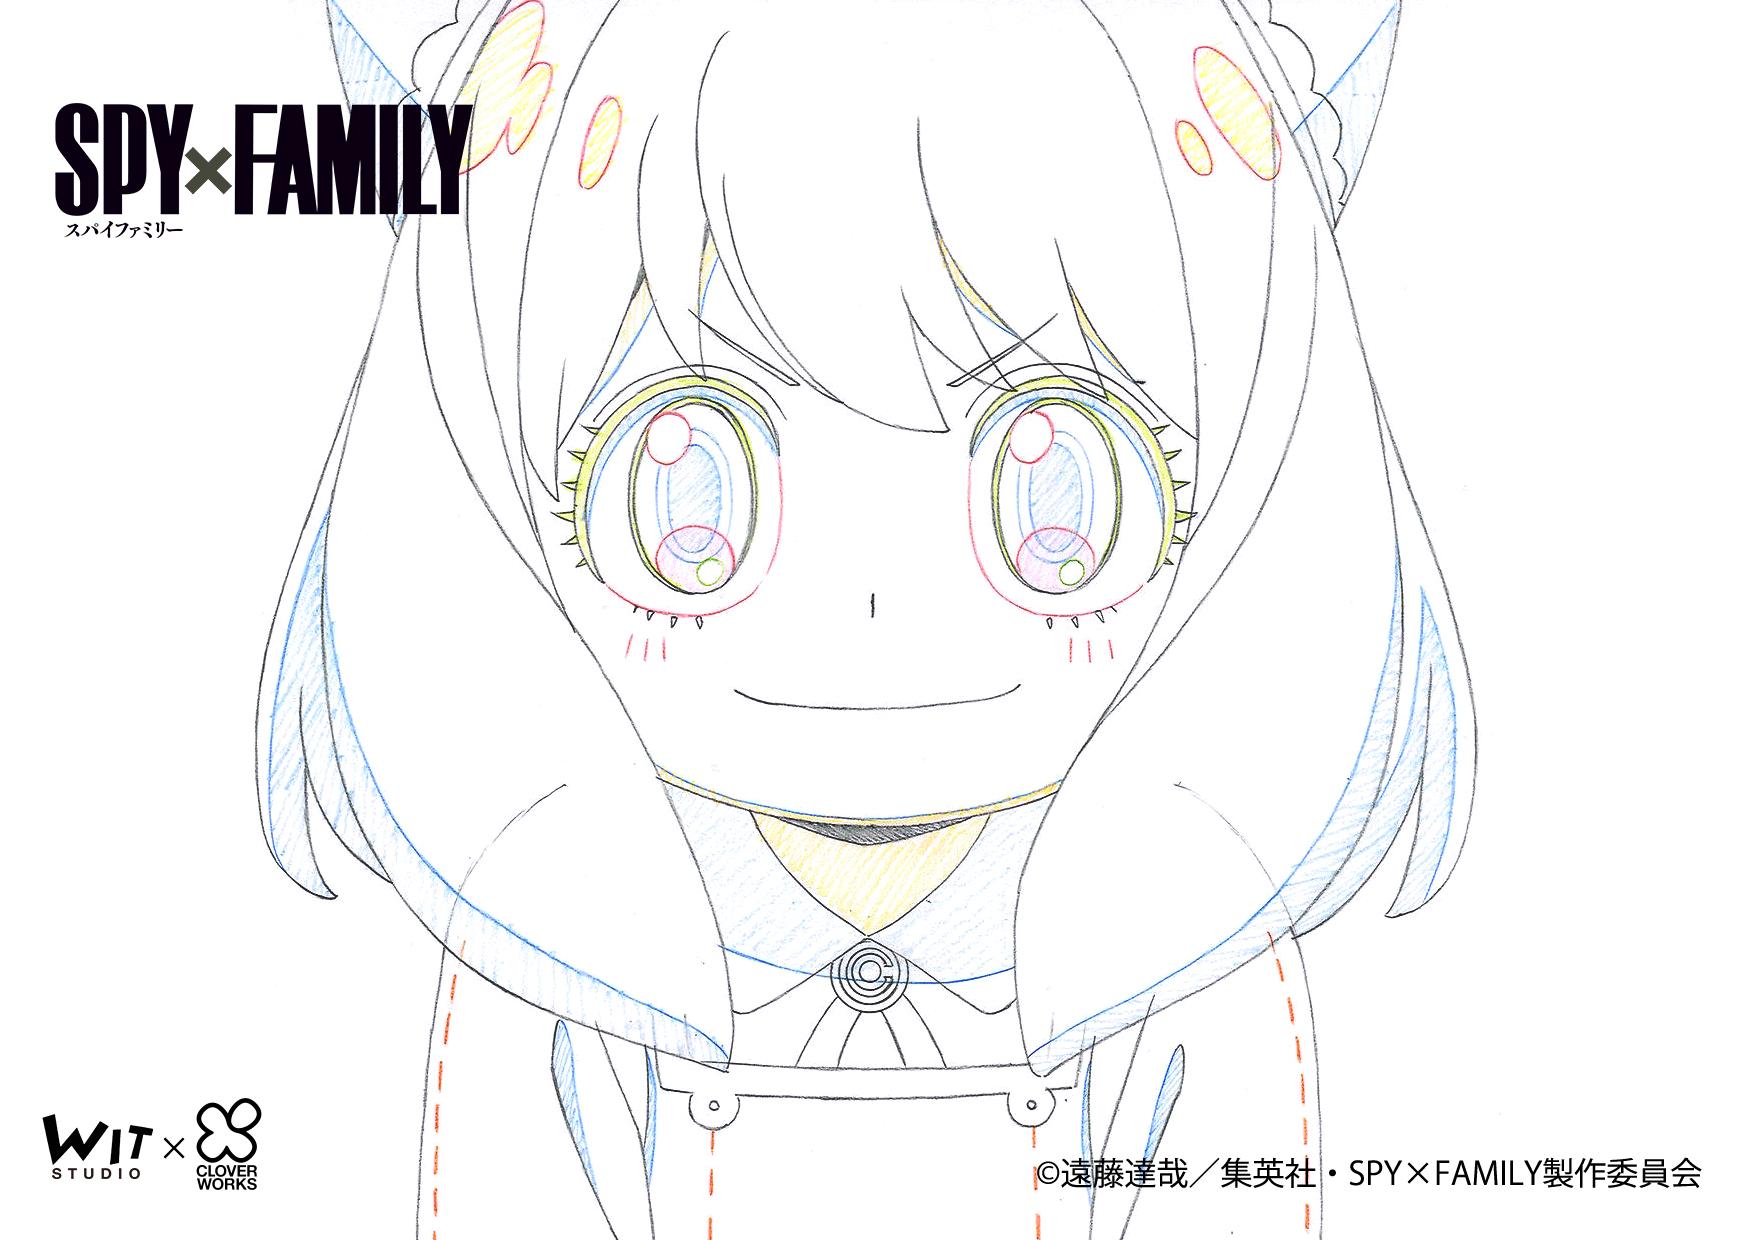 Anime SPY x FAMILY với hình ảnh đầy sắc màu và phong cách hoạt hình đặc trưng của Nhật Bản, hứa hẹn sẽ đem lại cho bạn những khoảnh khắc vui nhộn và hồi hộp.